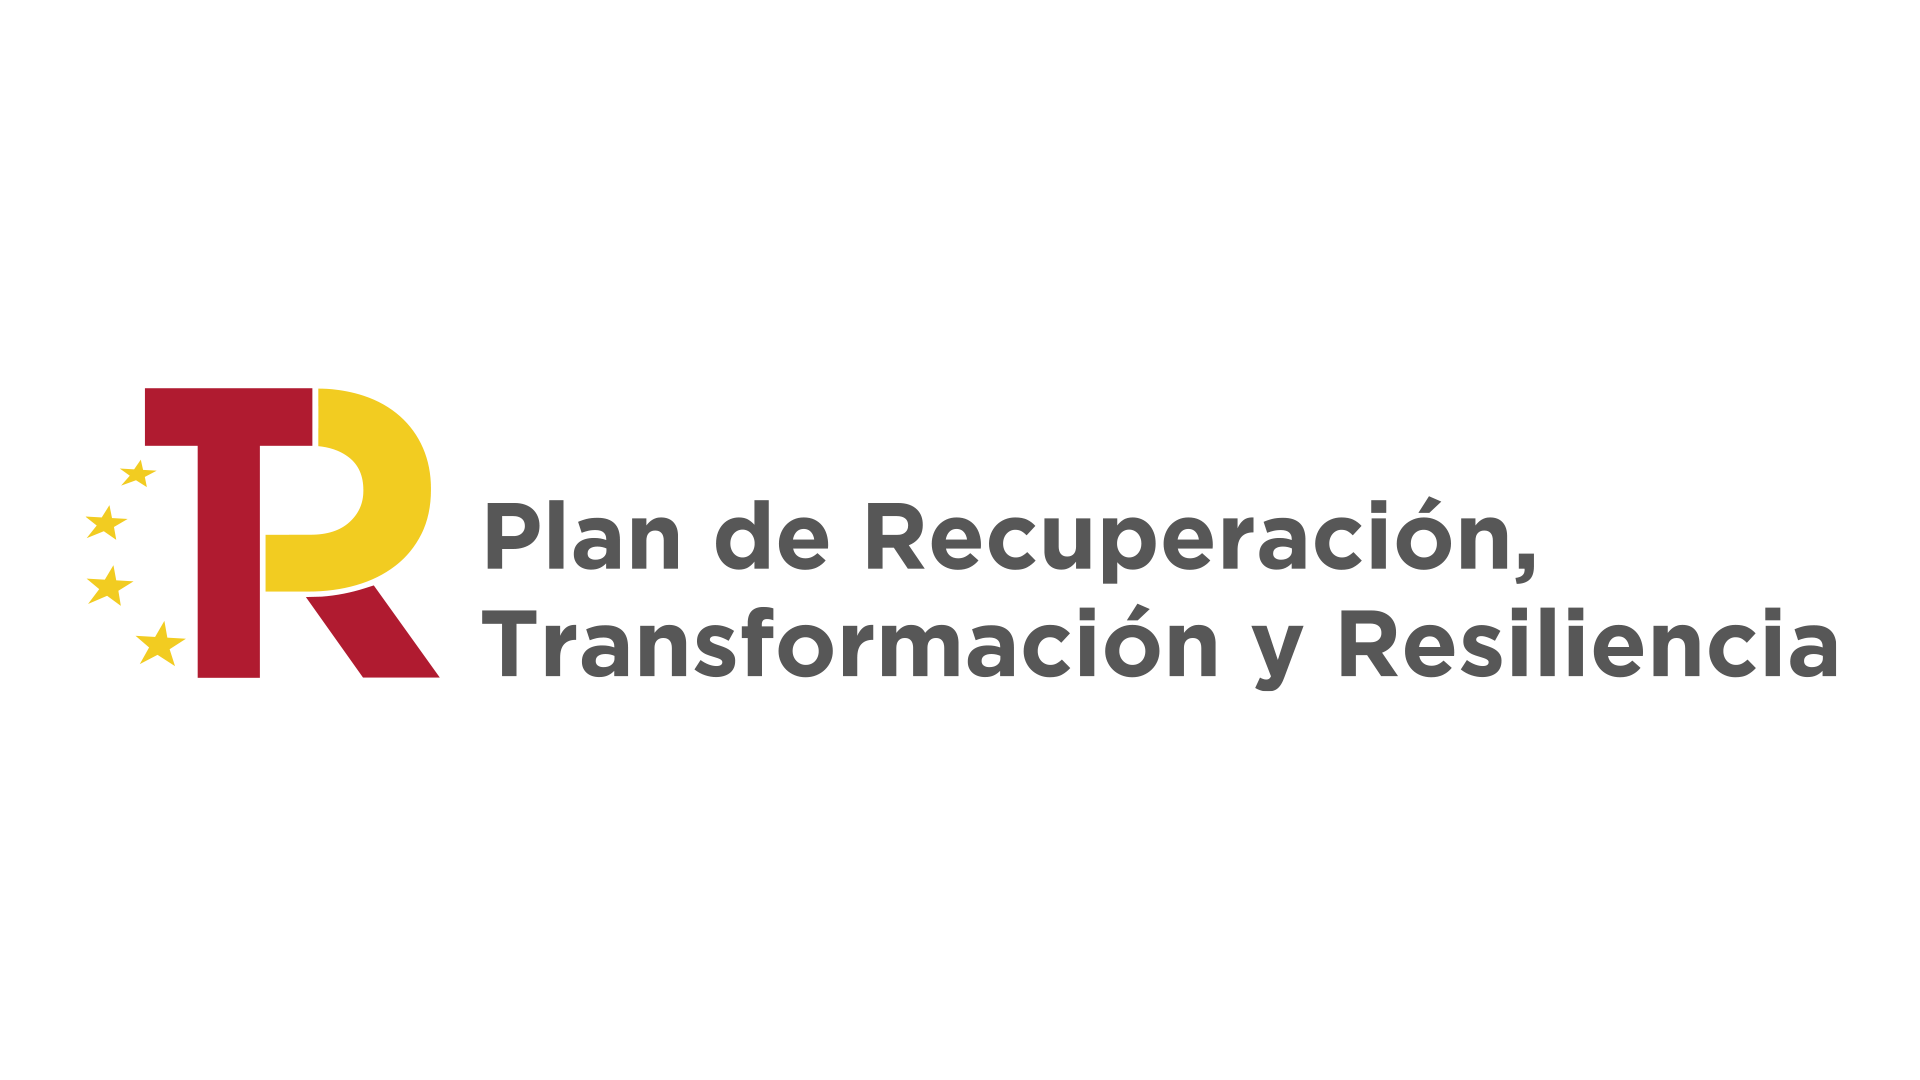 Plan de Recuperación, Transformación y Resiliencia, emblema de la Unión Europea